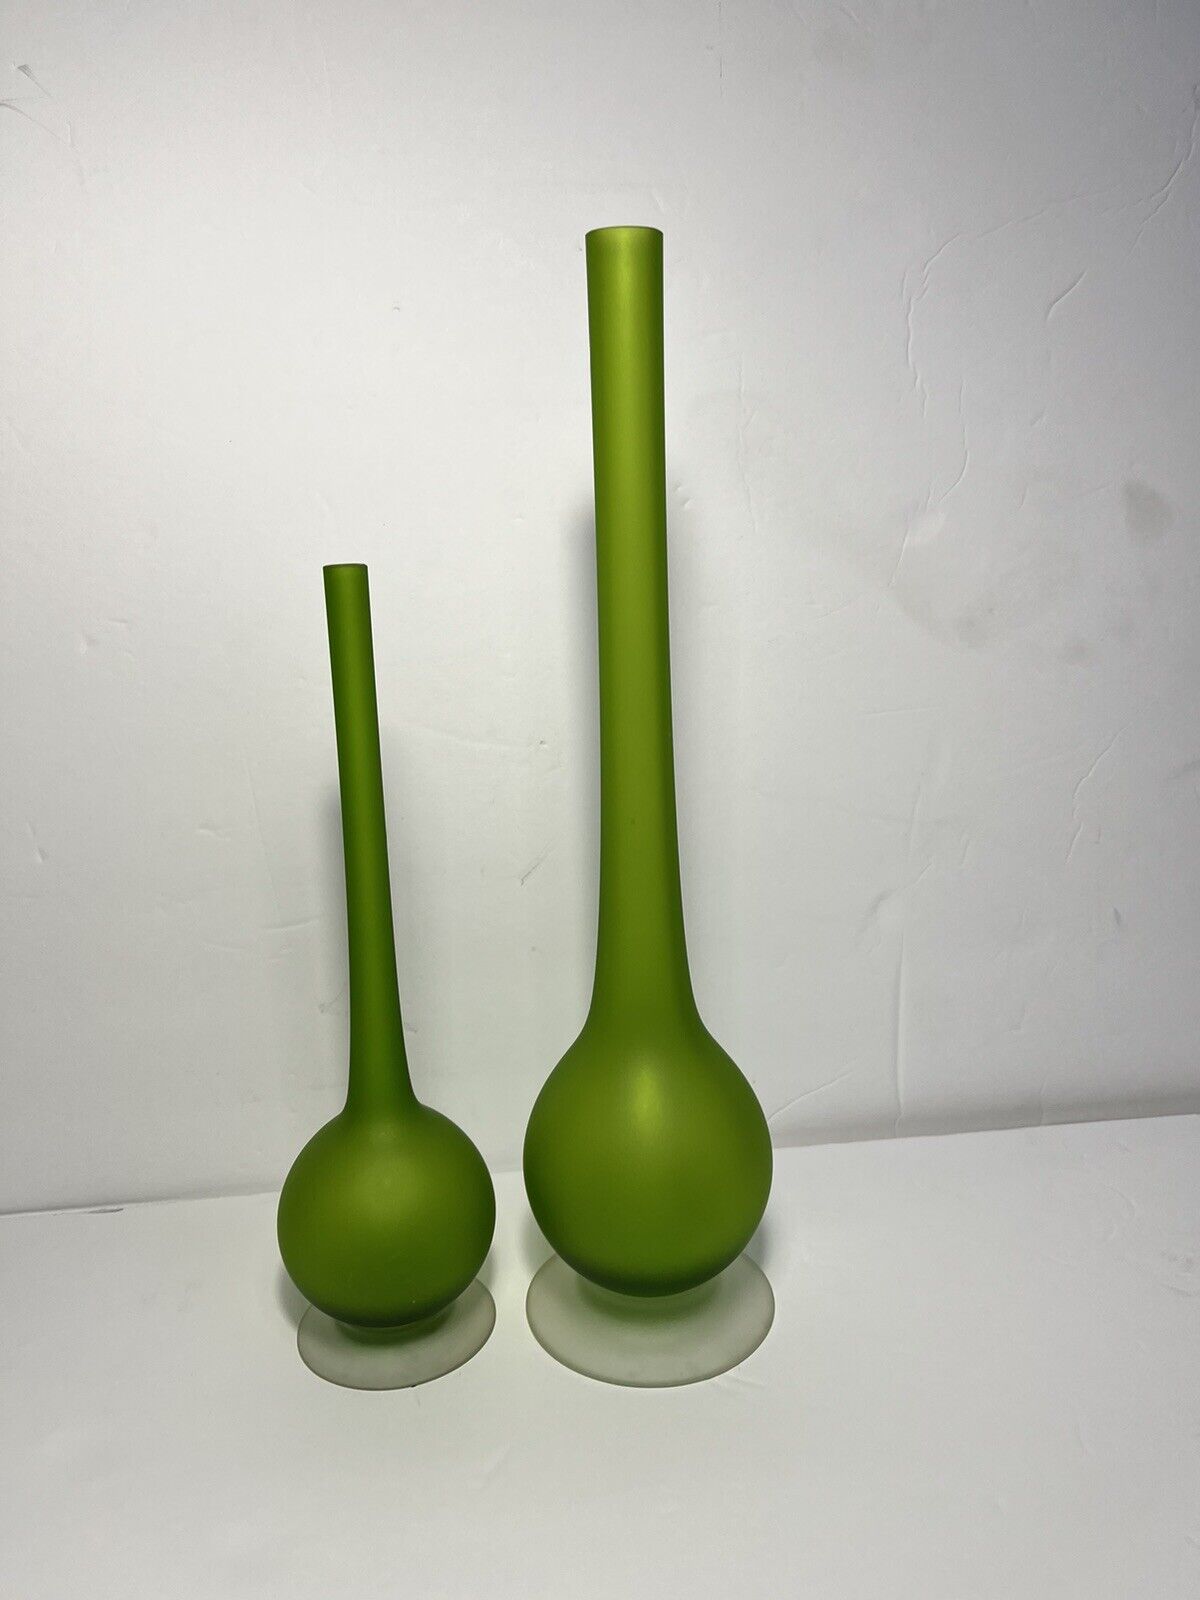 2 CARLO MORETTI Pencil Neck Vase VTG MCM Green Satin Glass ROSENTHAL NETTER